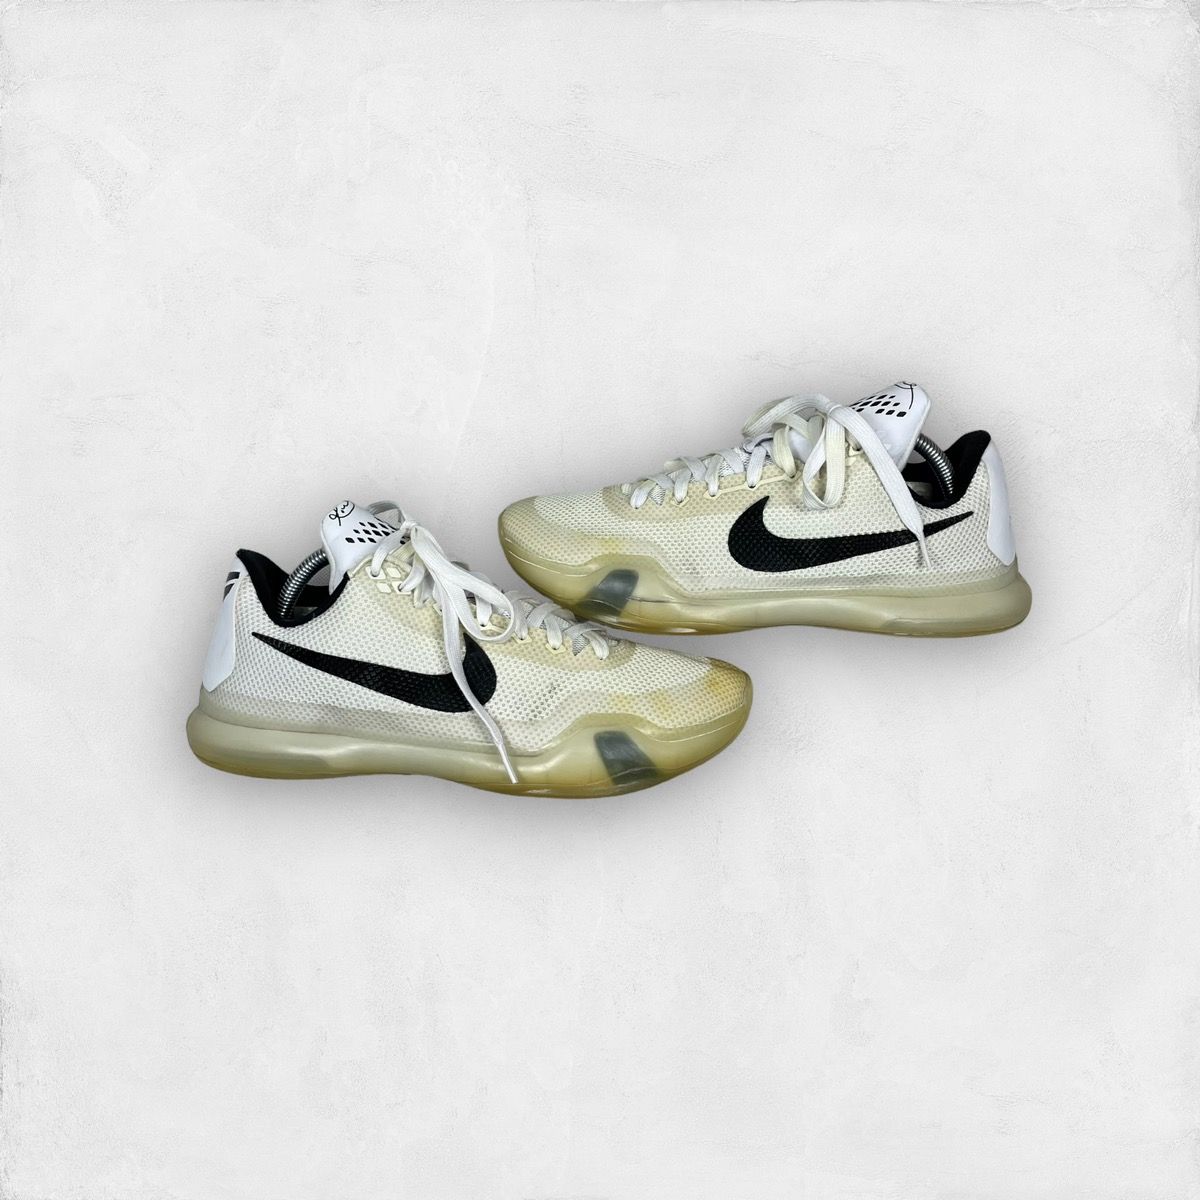 Pre-owned Kobe Mentality X Nike Kobe 10 Ep Shoes In White